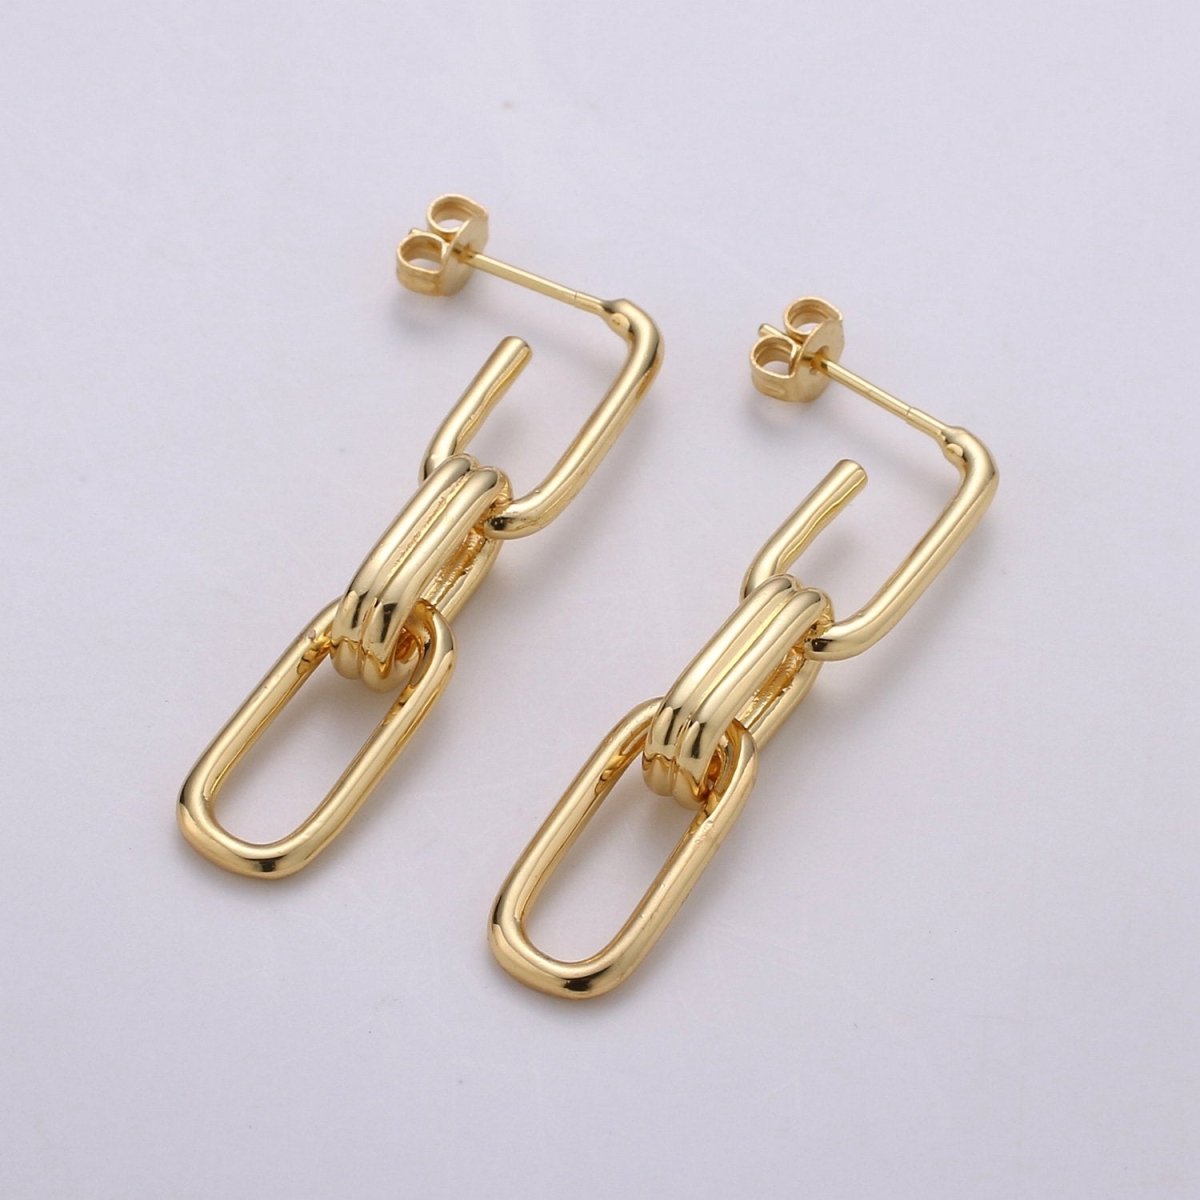 Chunky Link Hoops,Gold Link Hoops,Rectangle Hoops,Gold Hoops,Minimalist Earrings, Silver Hoops,Dangle Link Earrings,Gold Drop Earrings Q-160 - DLUXCA